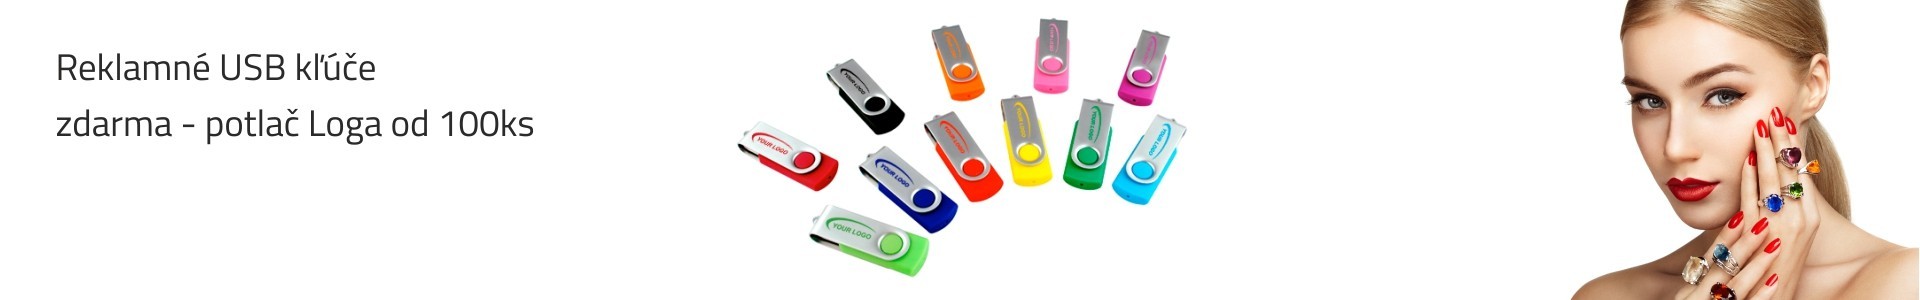 Reklamné USB kľúče s potlačou